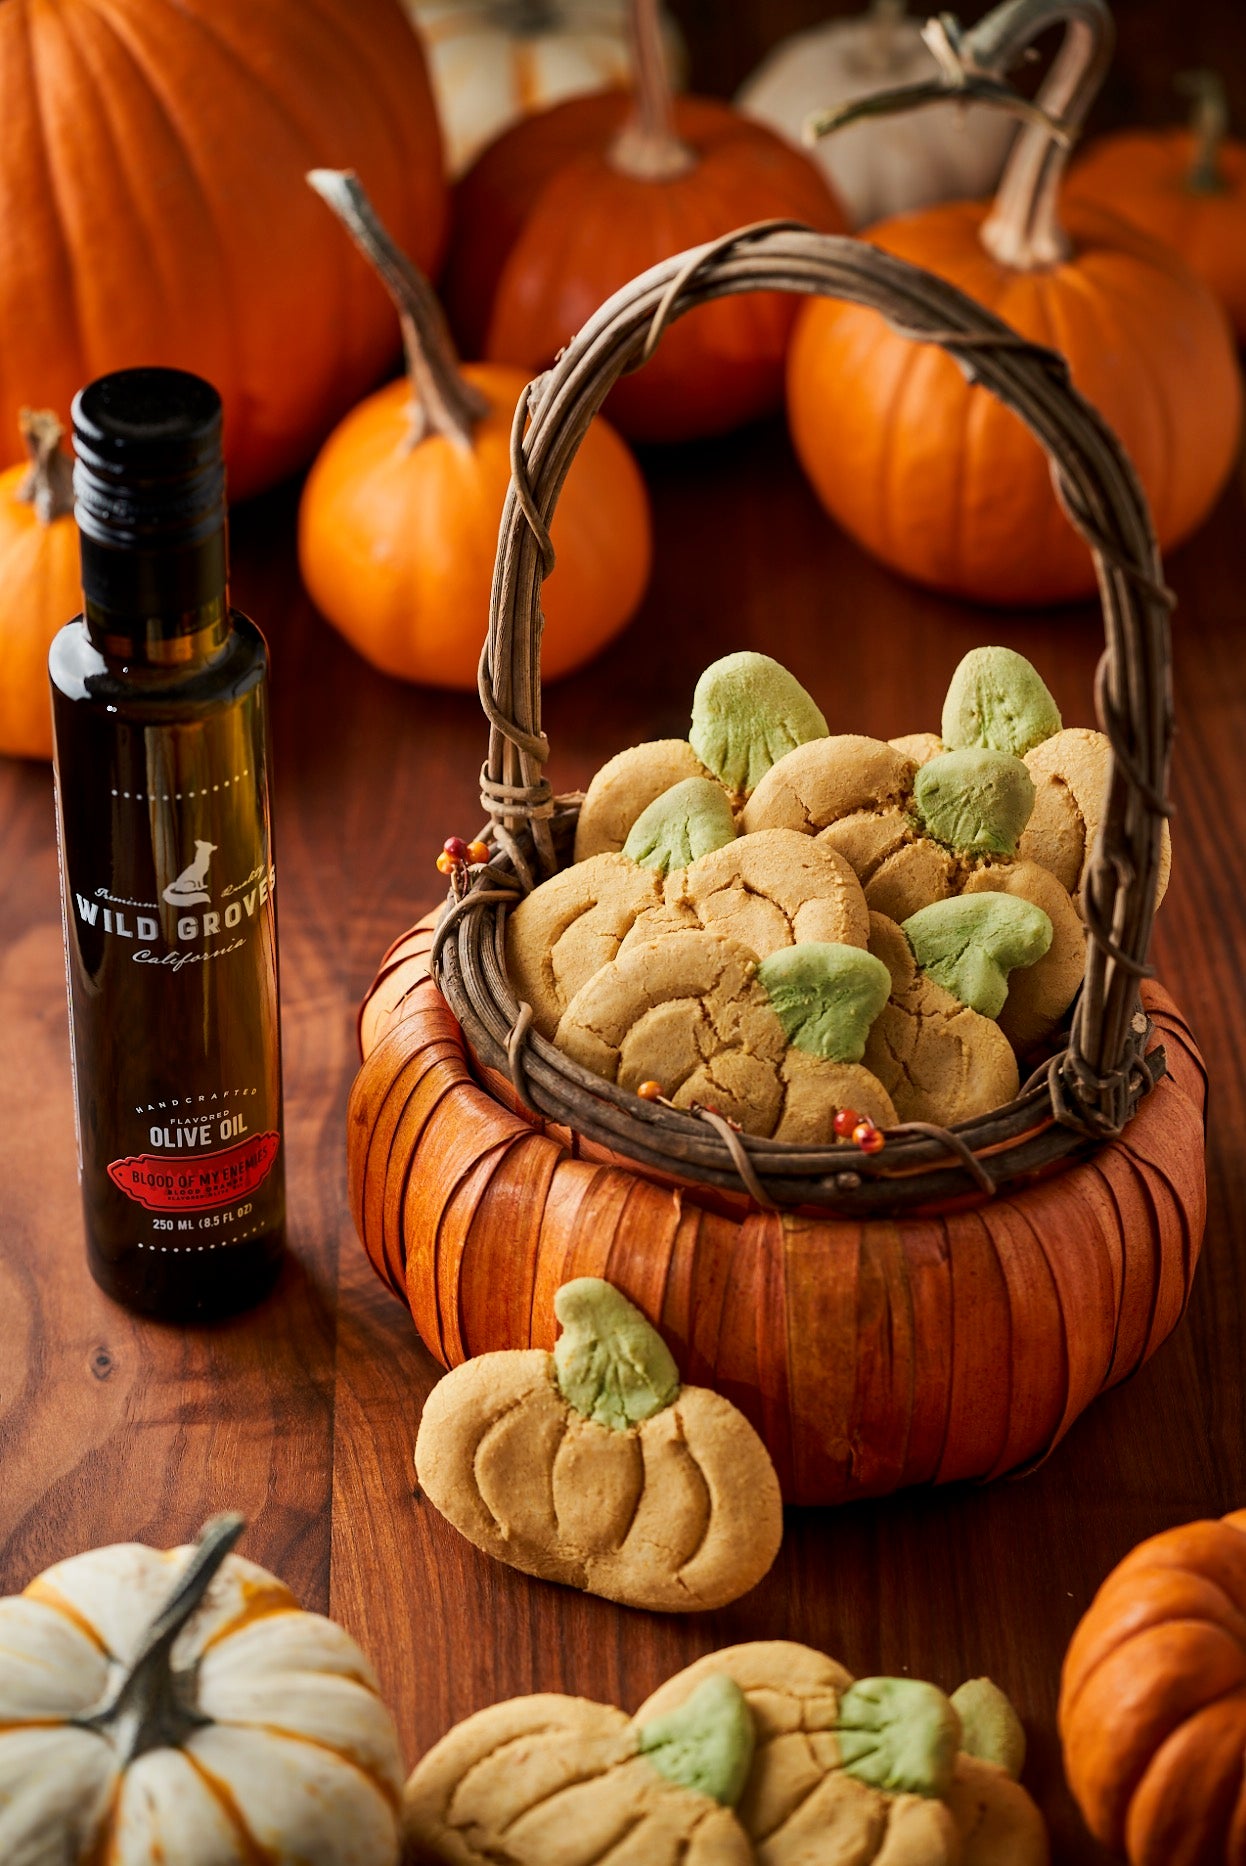 Spooky Halloween Cookies featuring "Blood of My Enemies" (Blood Orange Olive Oil)